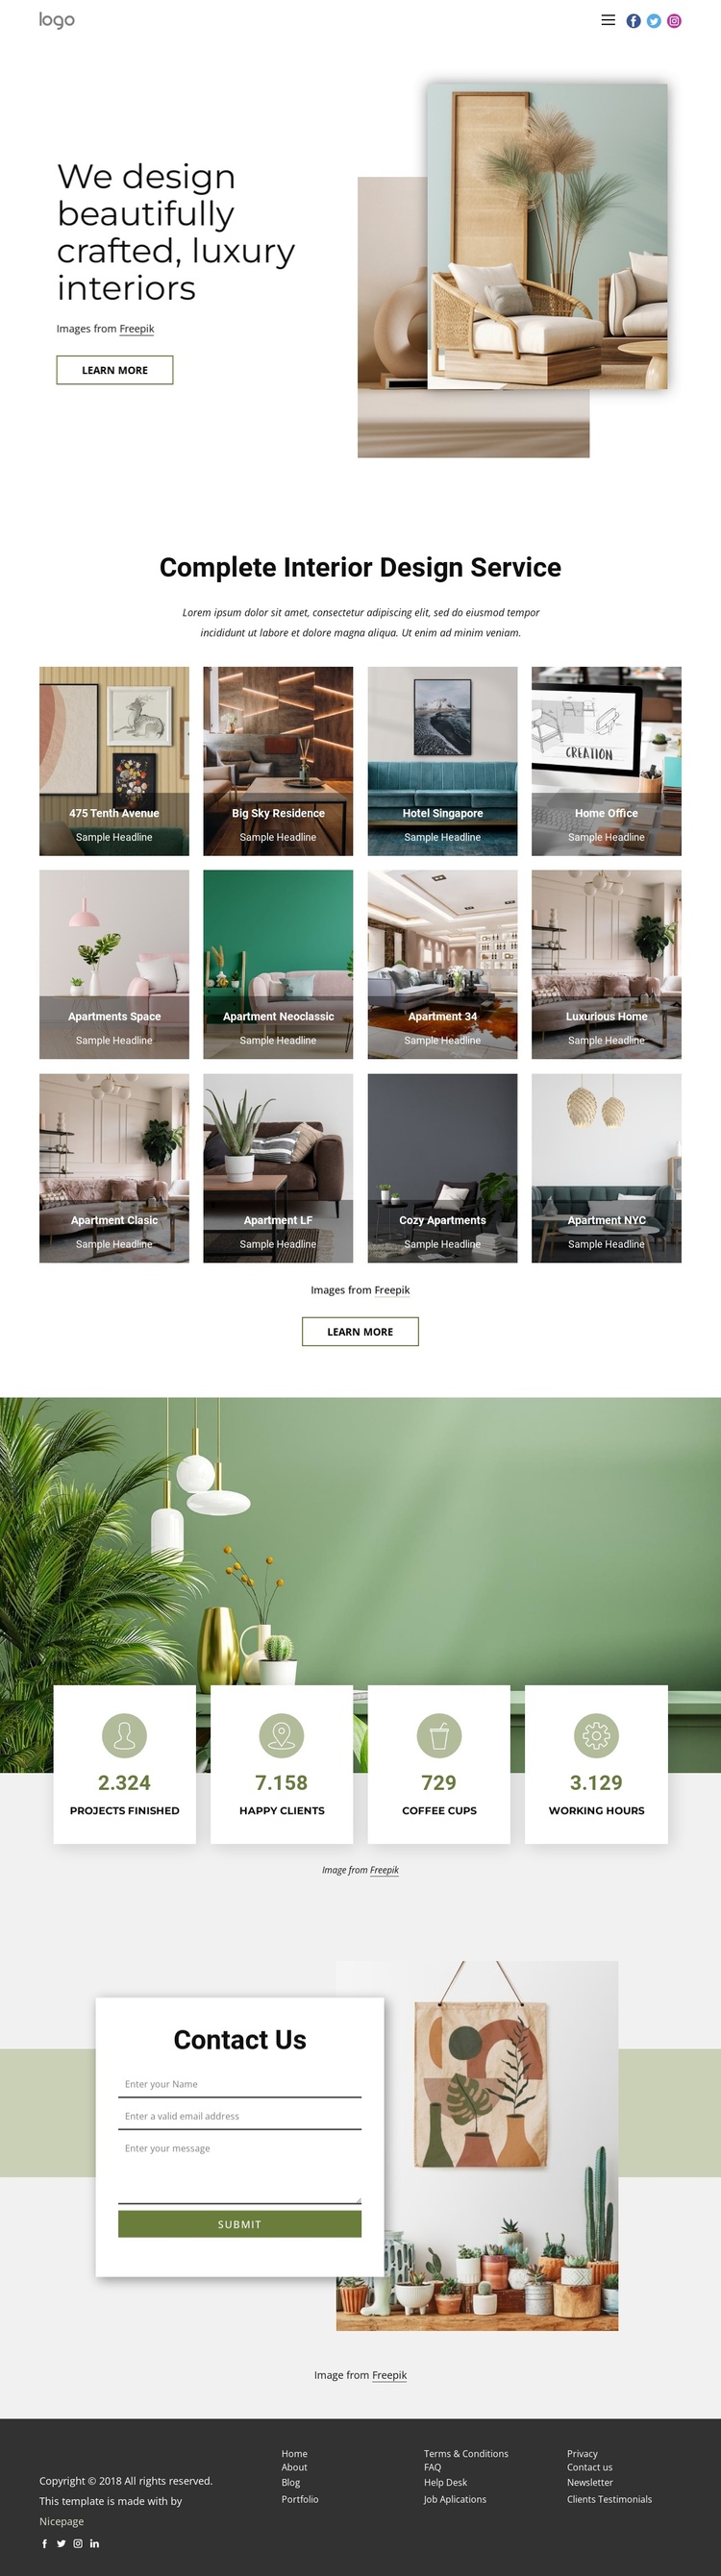 We design luxury interiors Website Builder Software